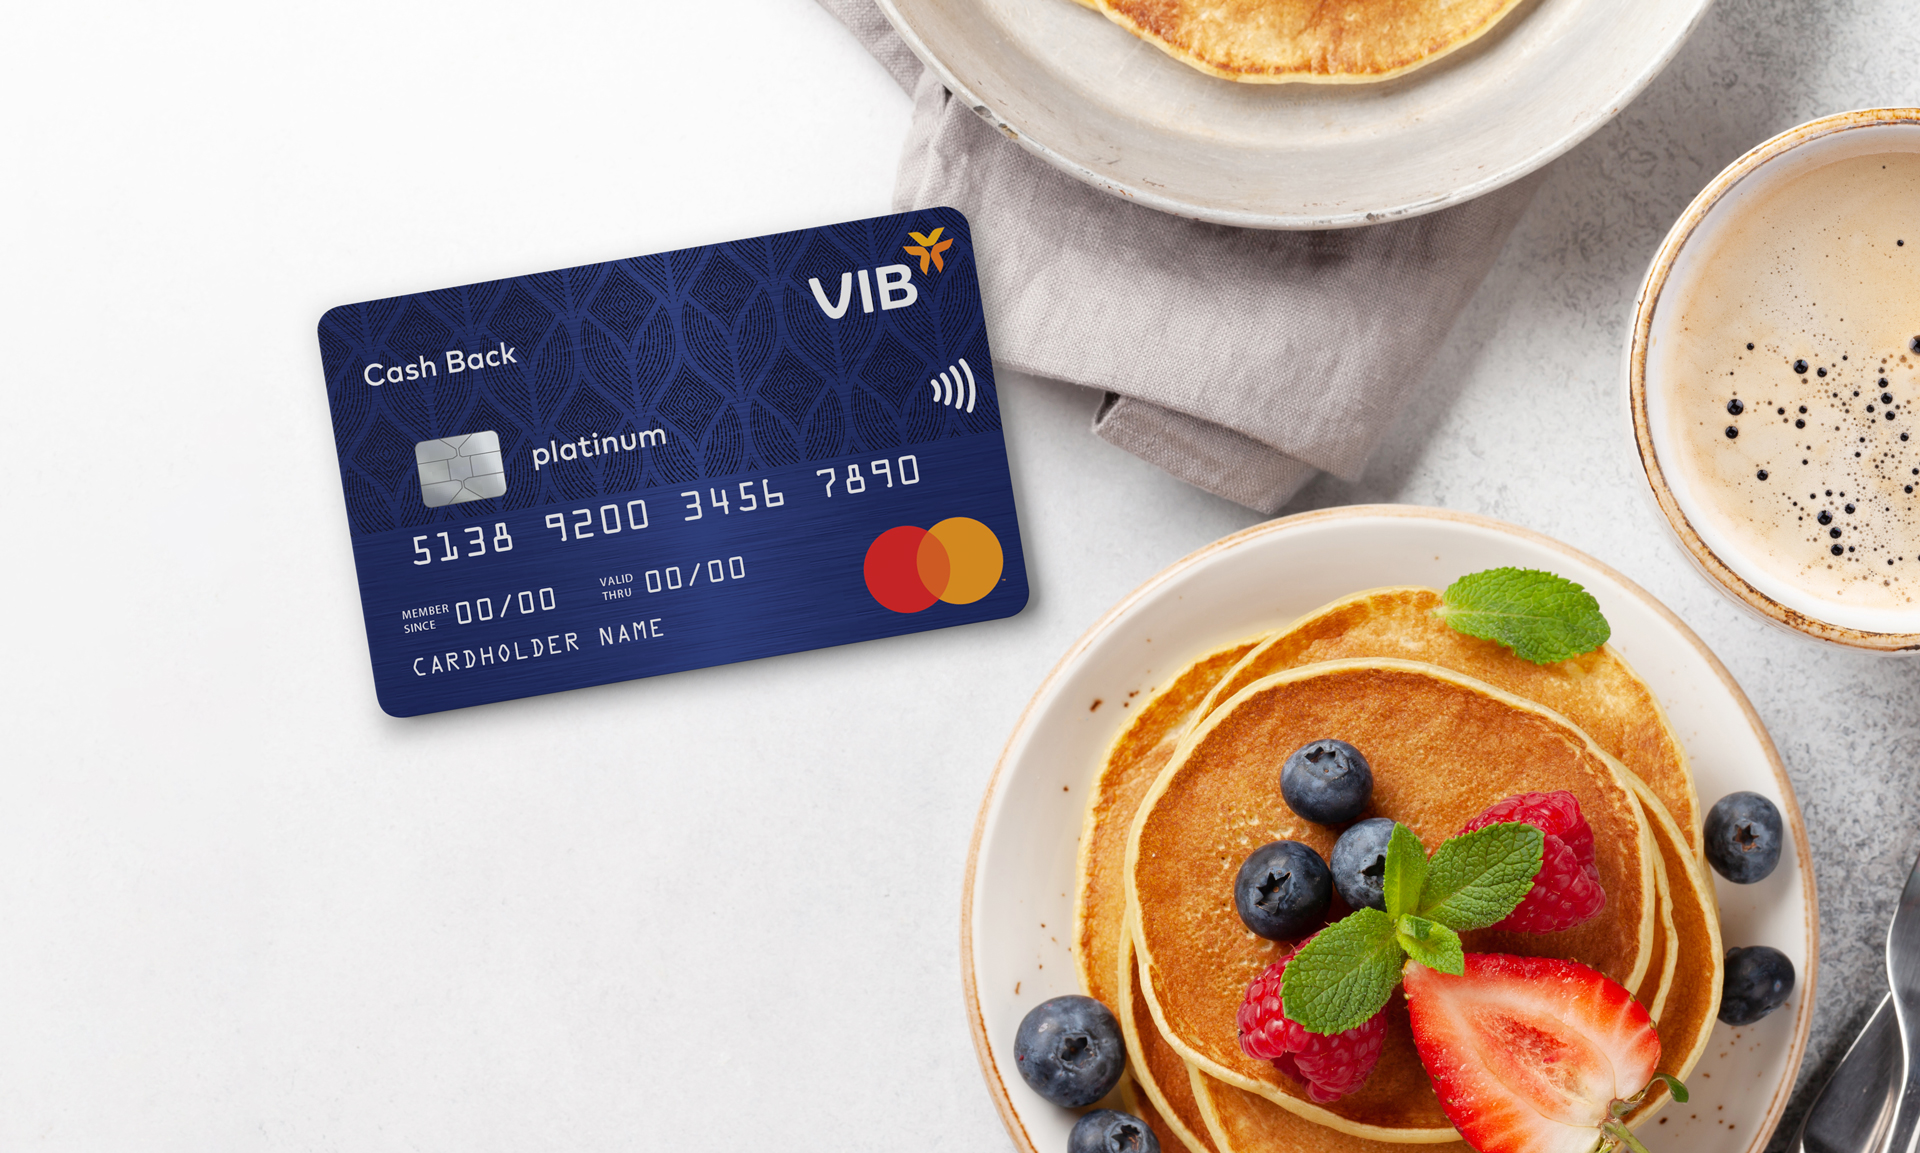 Chu kỳ miễn lãi của thẻ tín dụng VIB Cash Back kéo dài đến 55 ngày